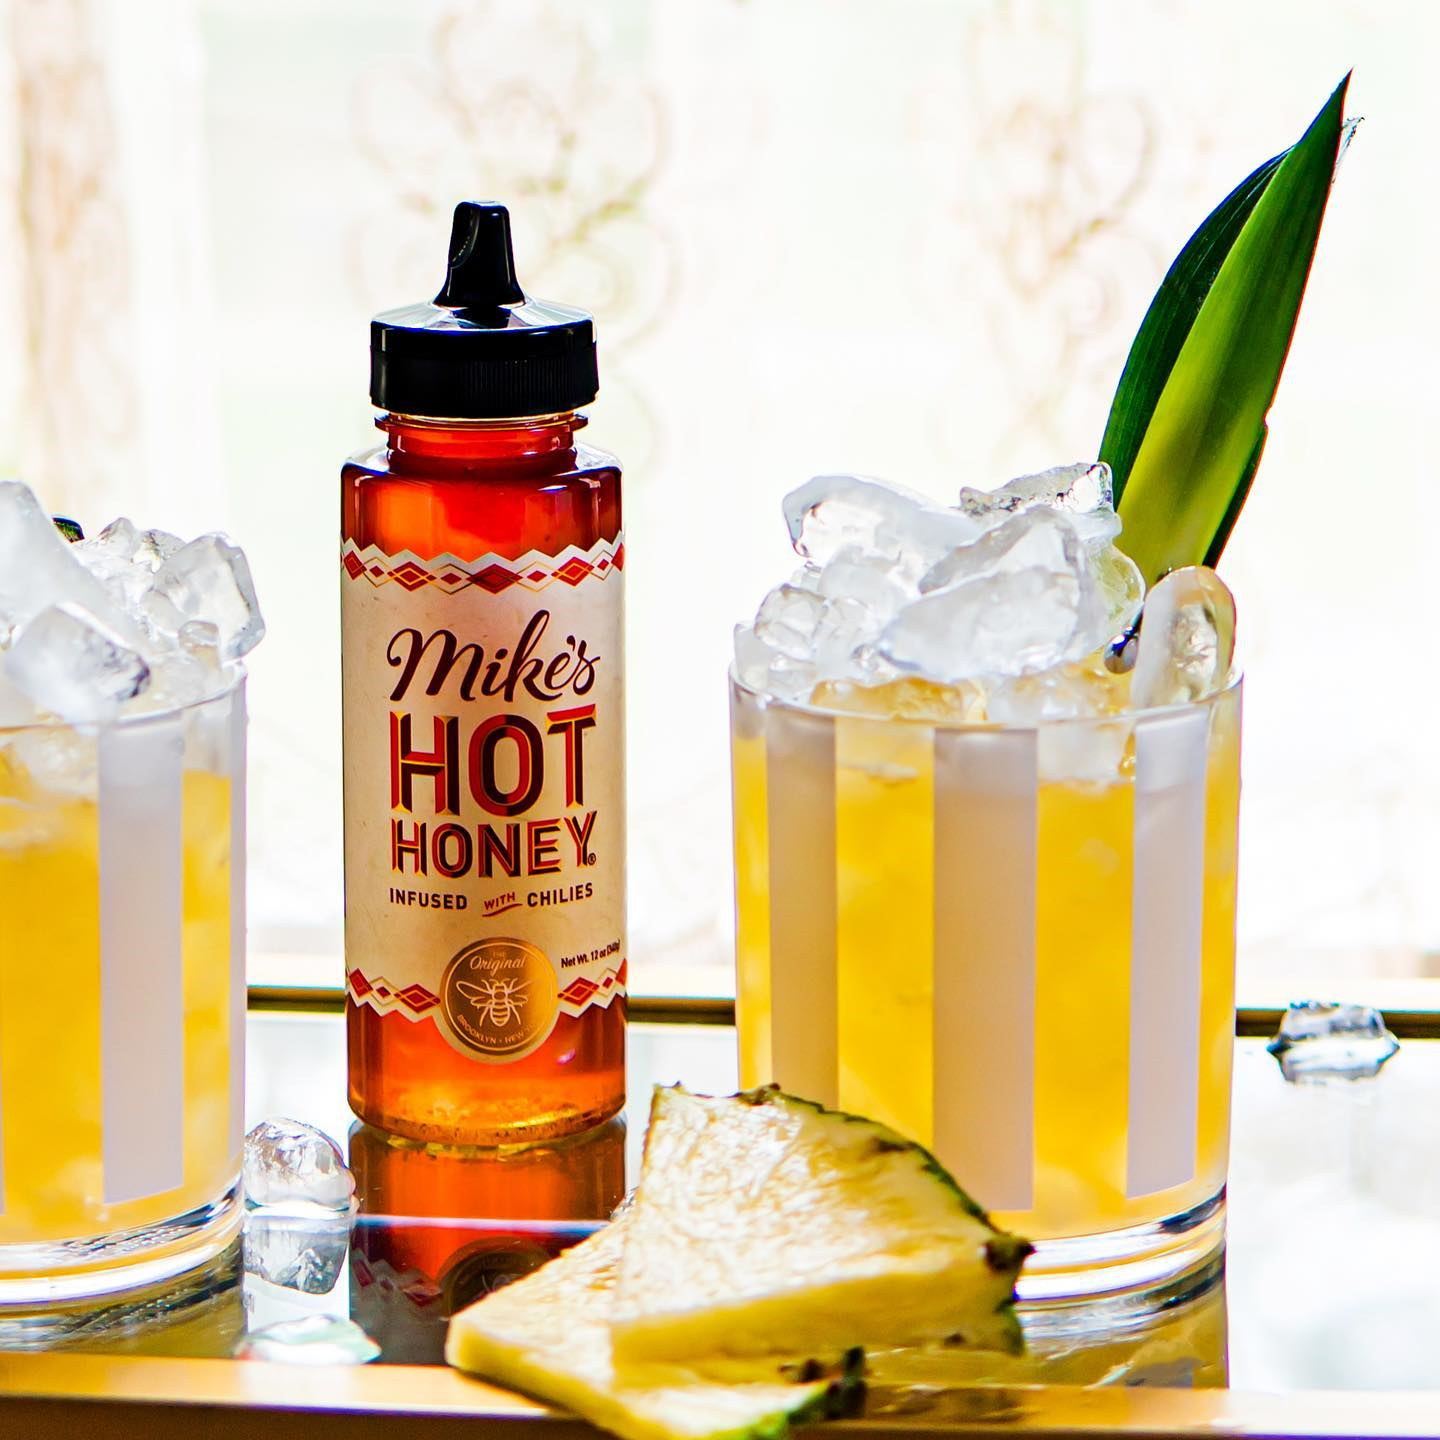 Mike's Hot Honey Original